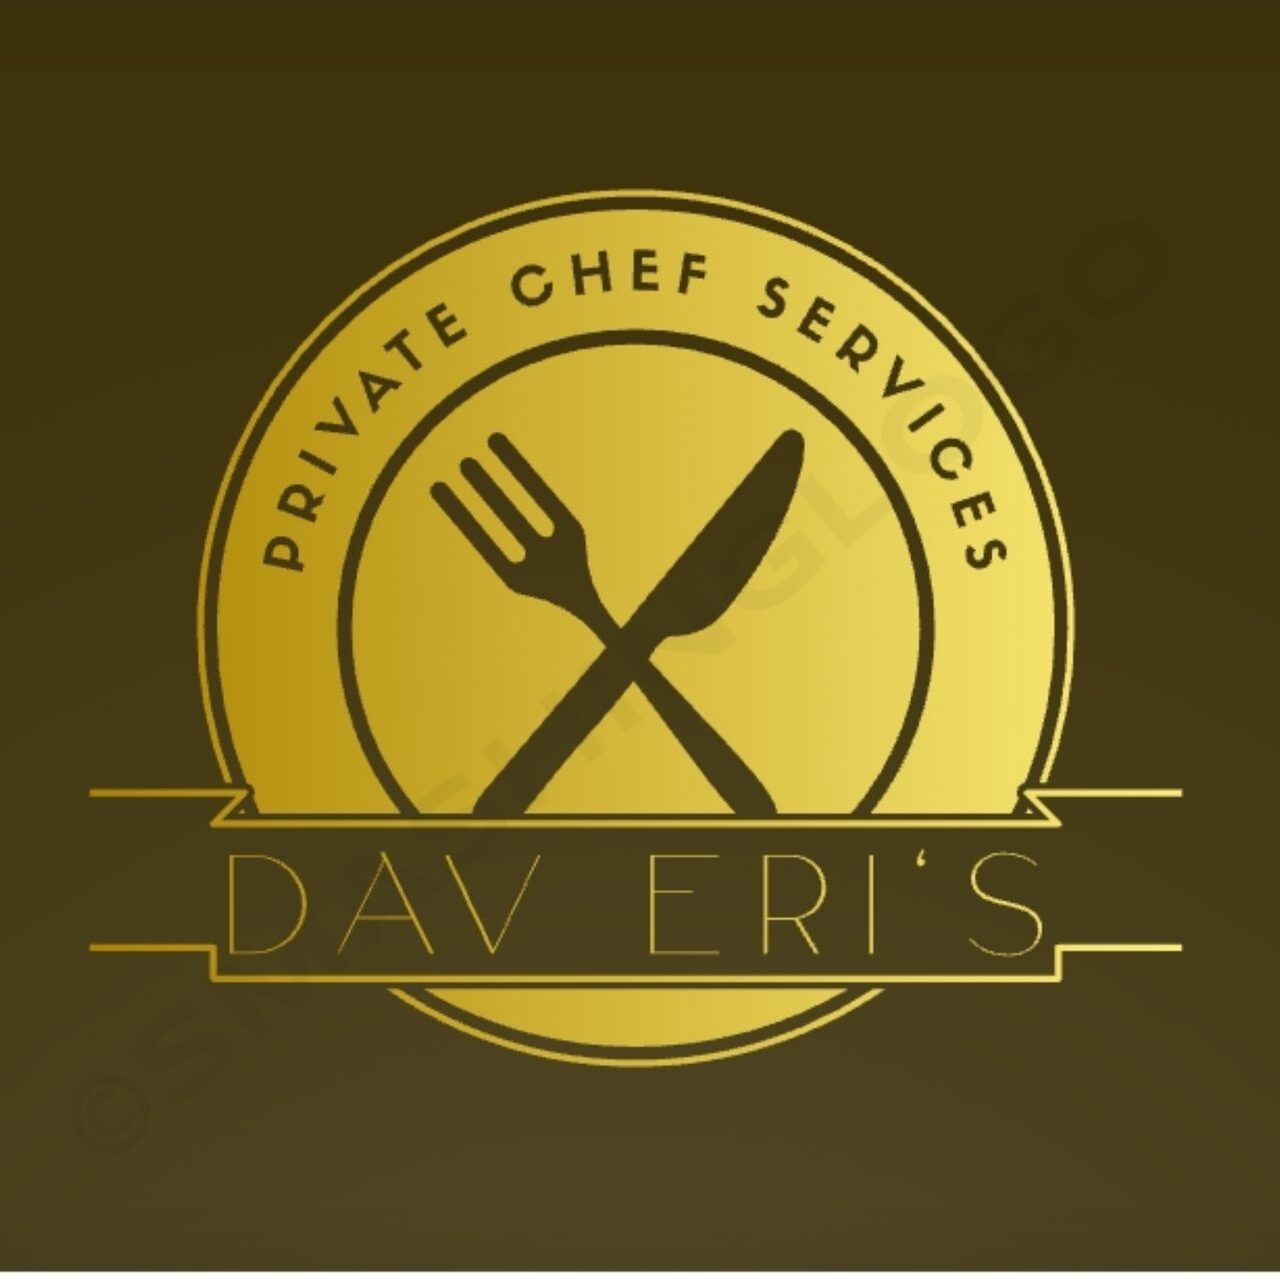 DavEri's Private Chef Services